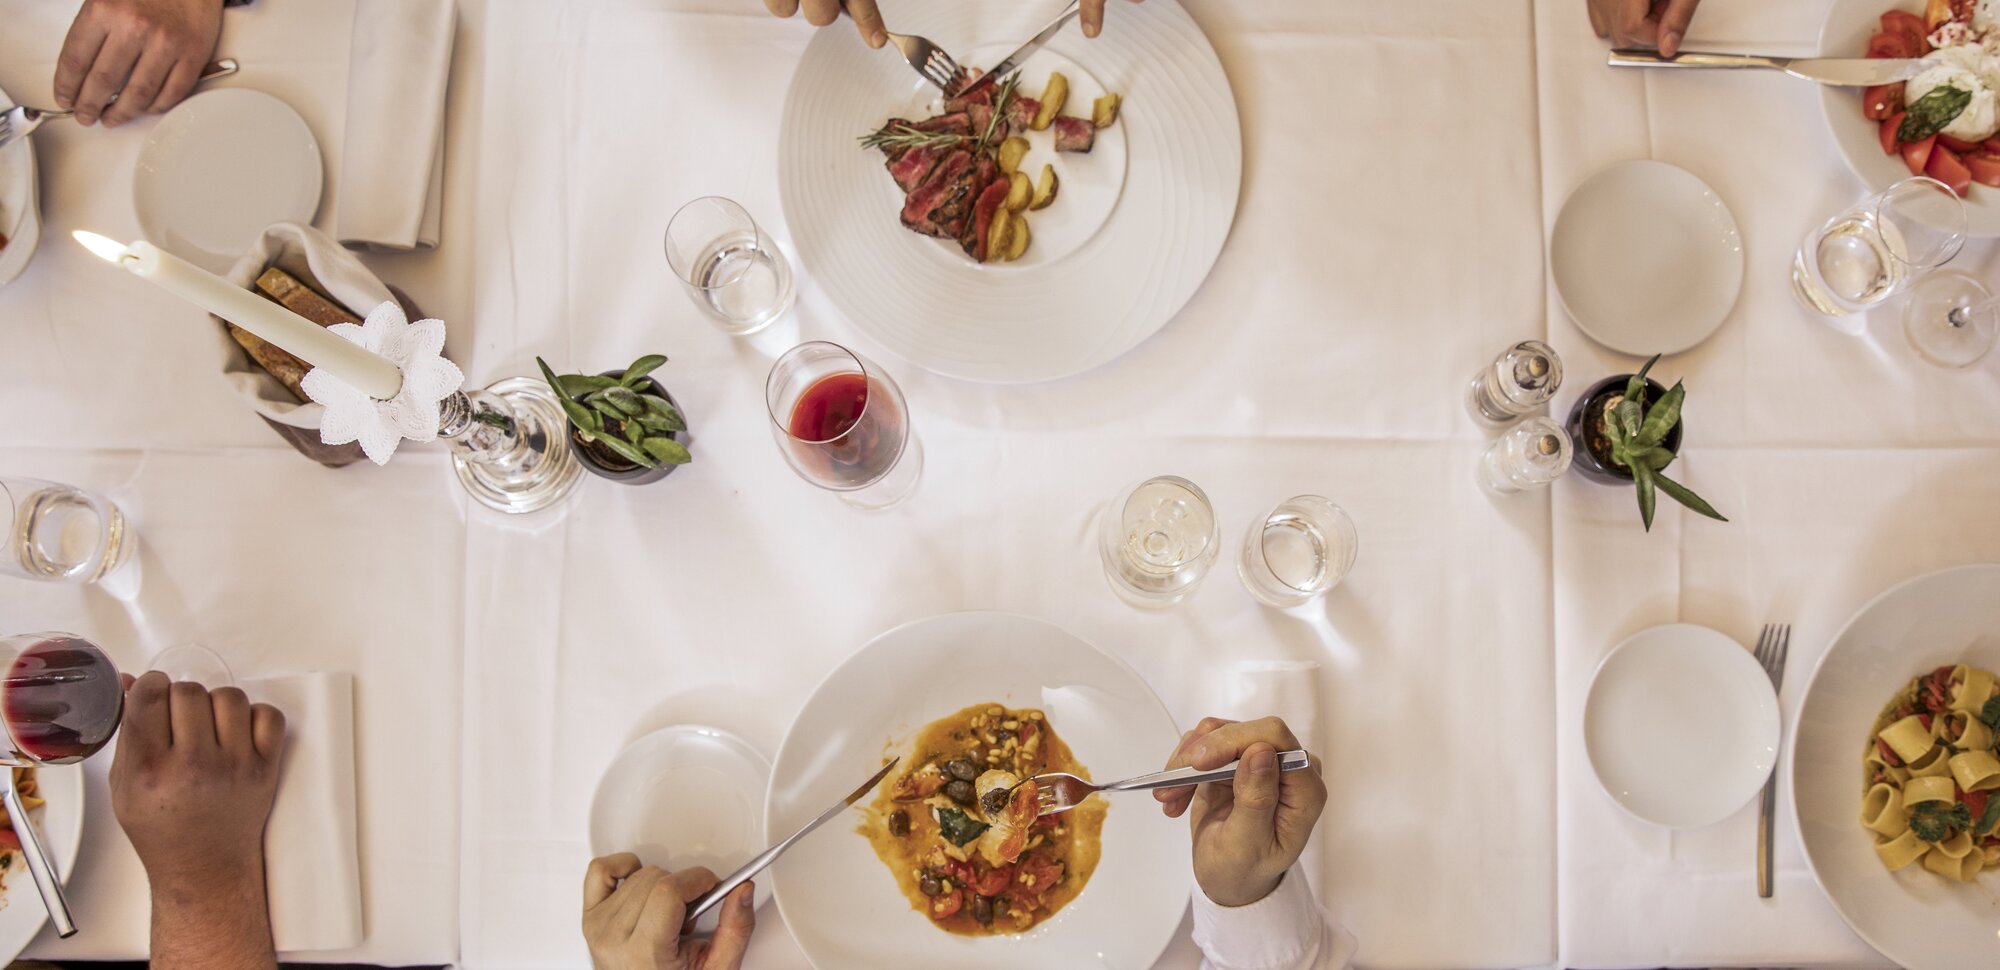 Freunde am Abendessen im Gourmet Restaurant in Locarno von oben Fotografiert